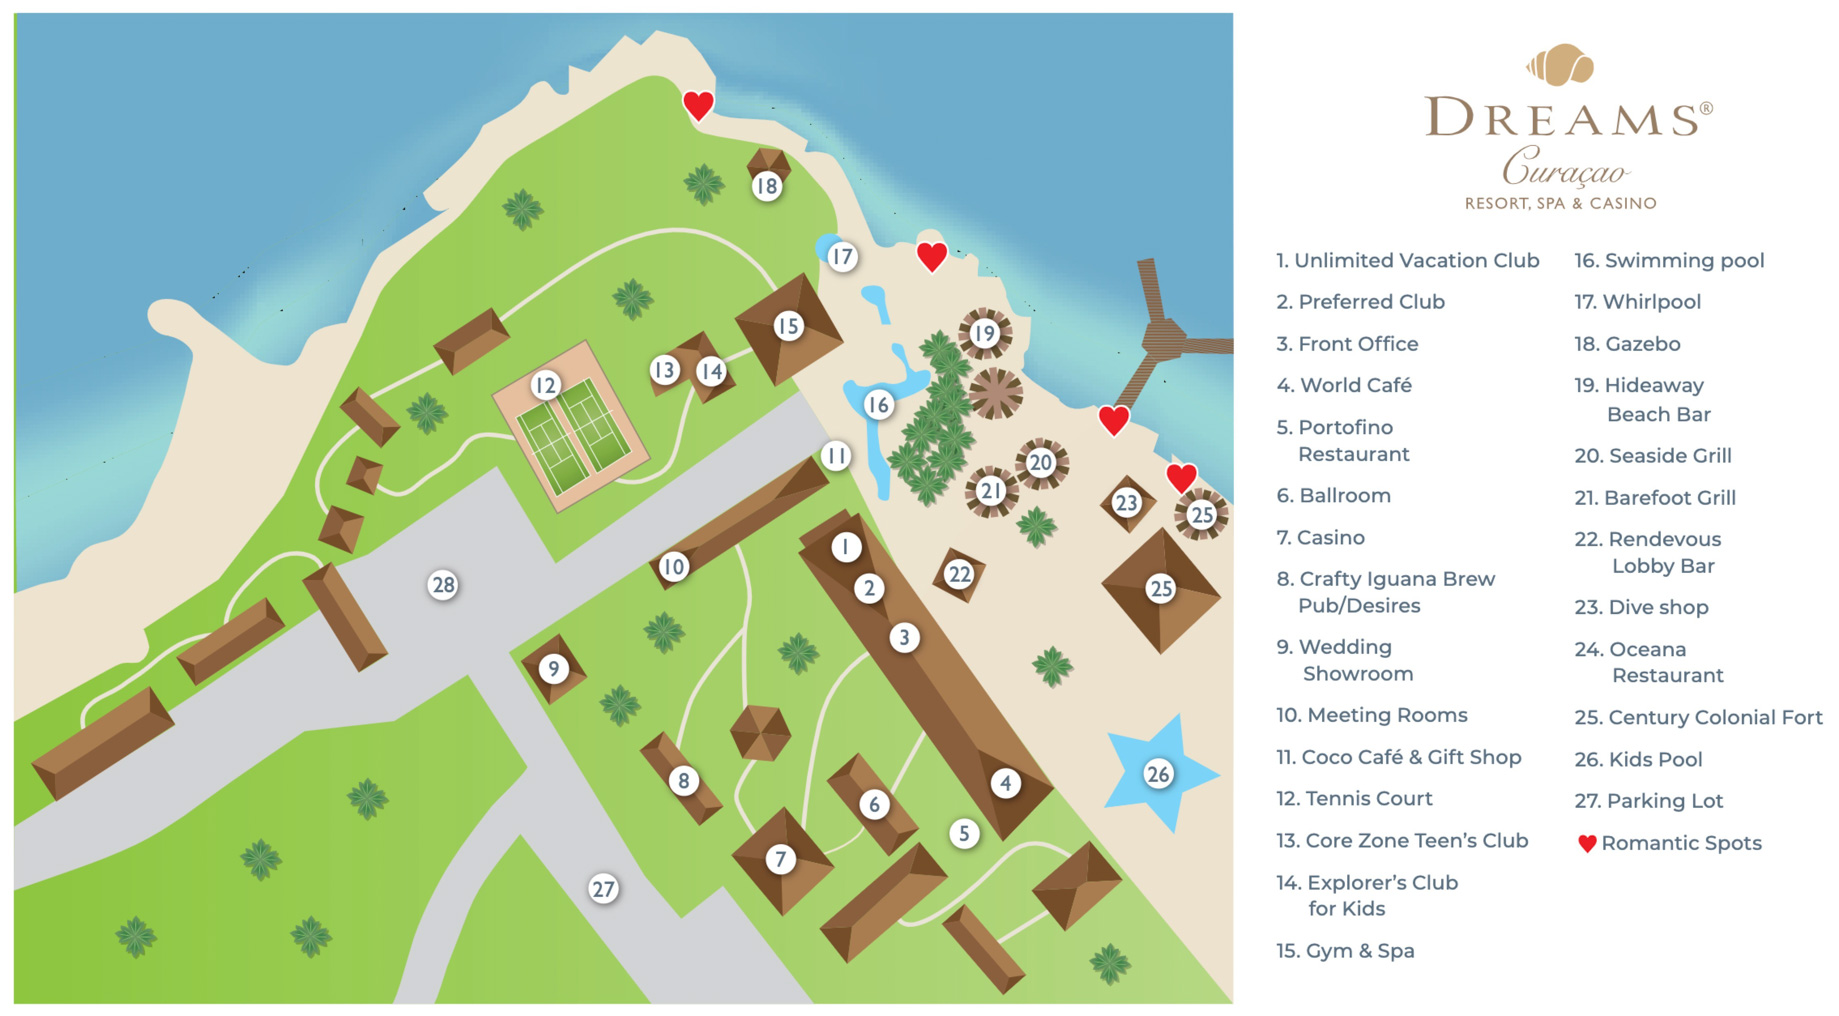 Dreams Curaçao Resort, Spa & Casino – Willemstad, Curaçao – Resort Map